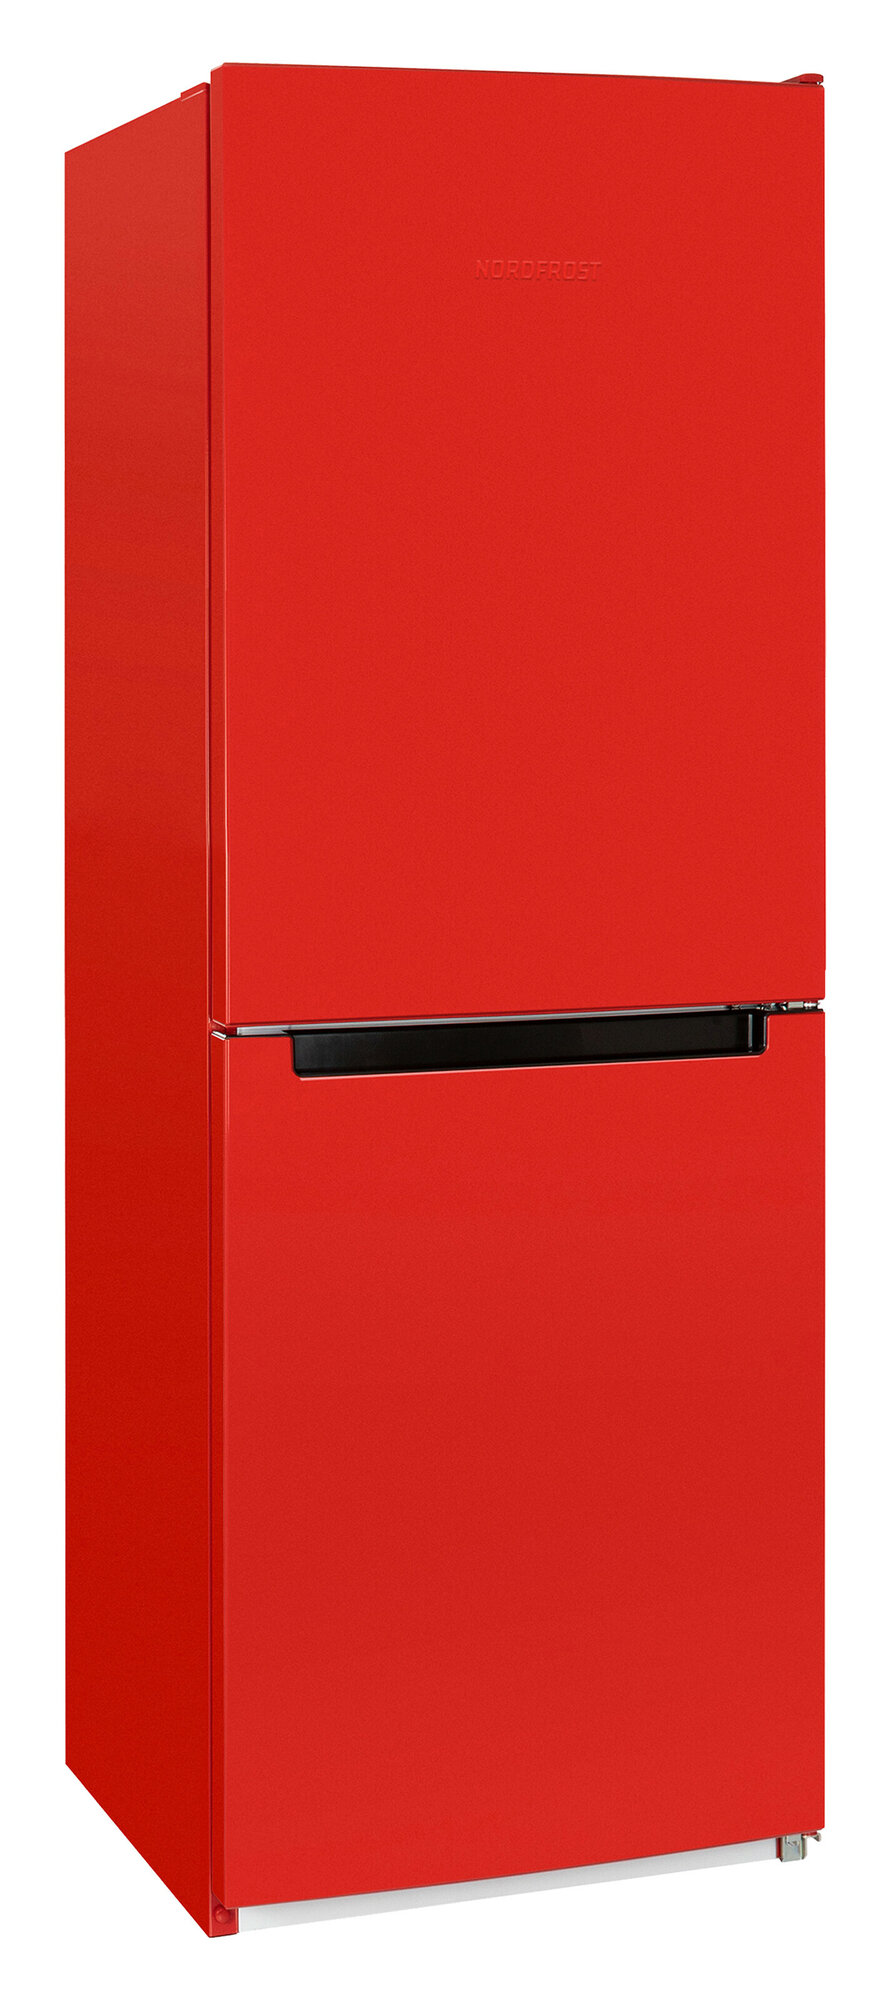 Холодильник NORDFROST NRB 161NF R двухкамерный, красный, No Frost в МК, 275 л